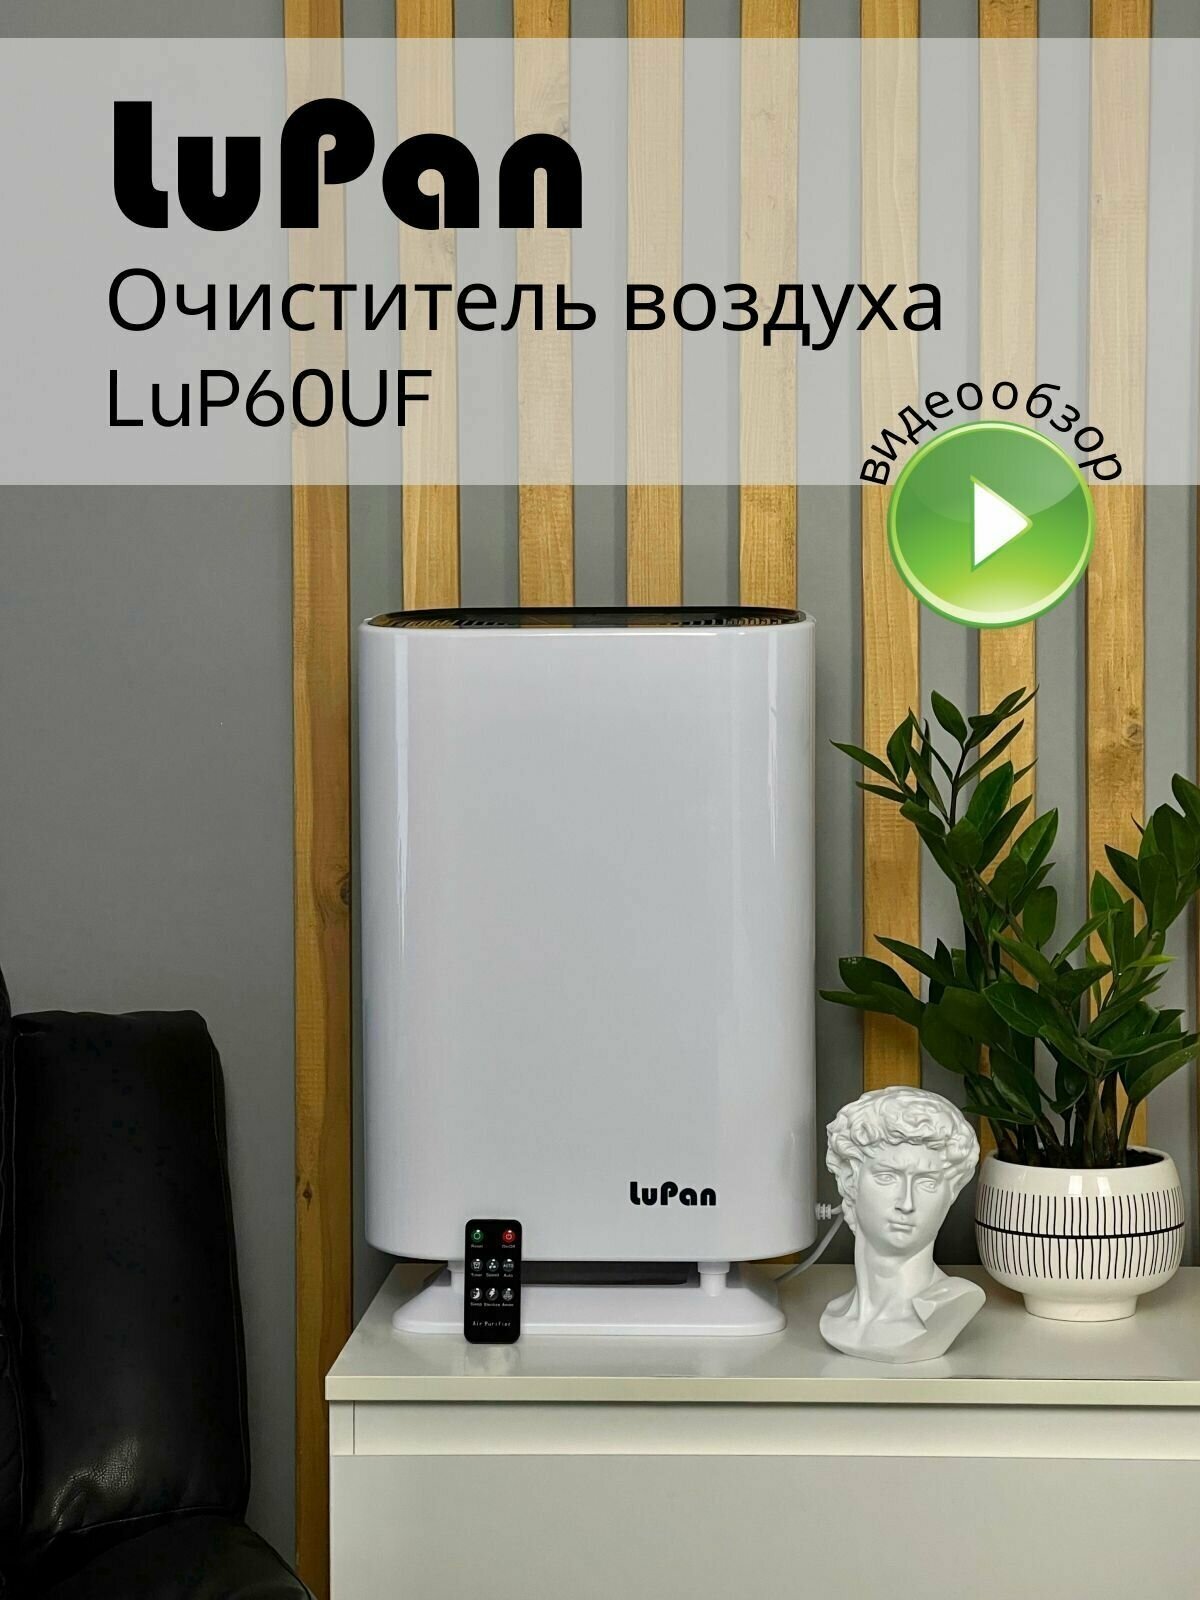 Очиститель воздуха для дома LuPan LaP60UF